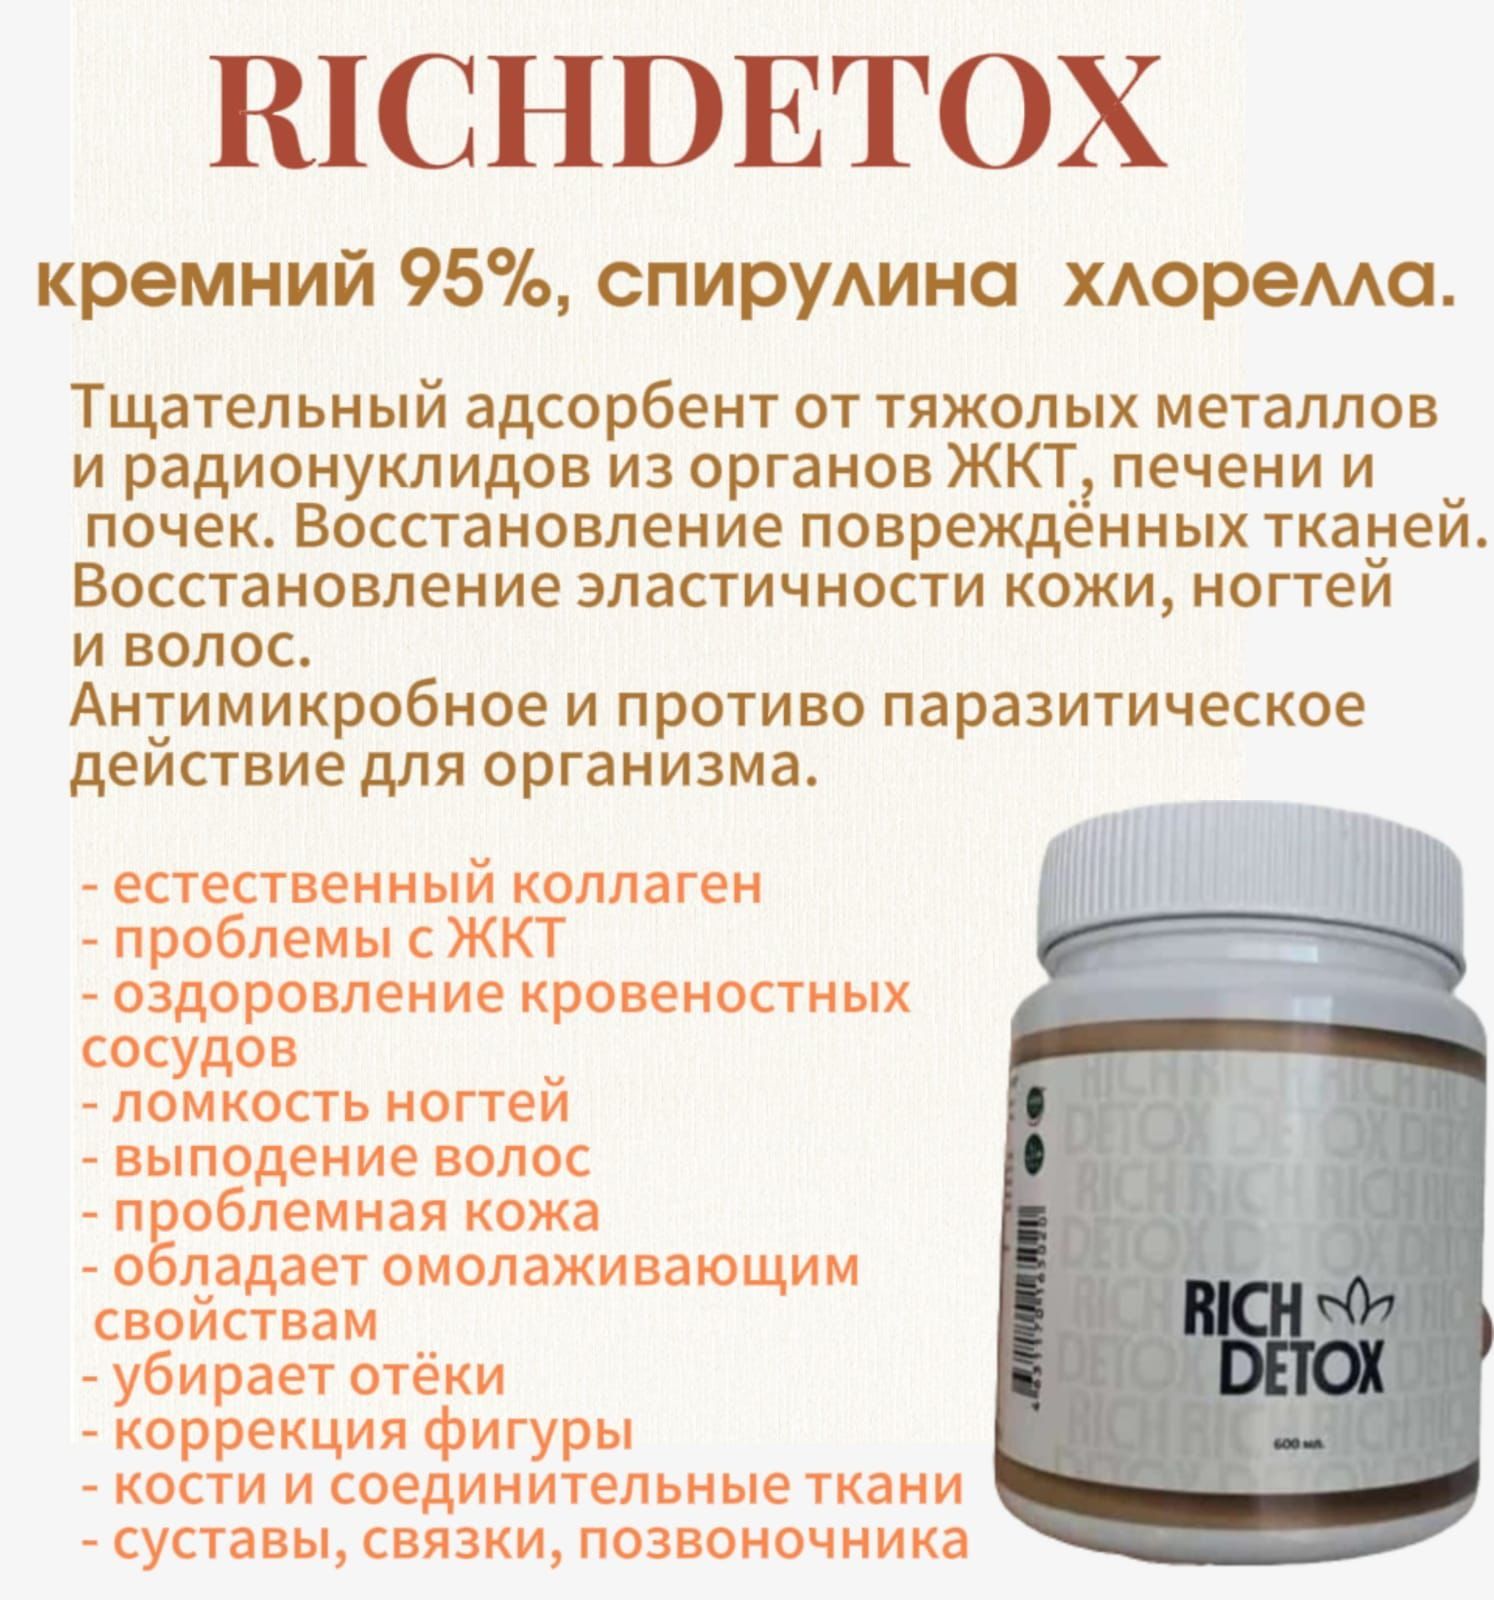 Ричдетокс от Richance 1200 ml